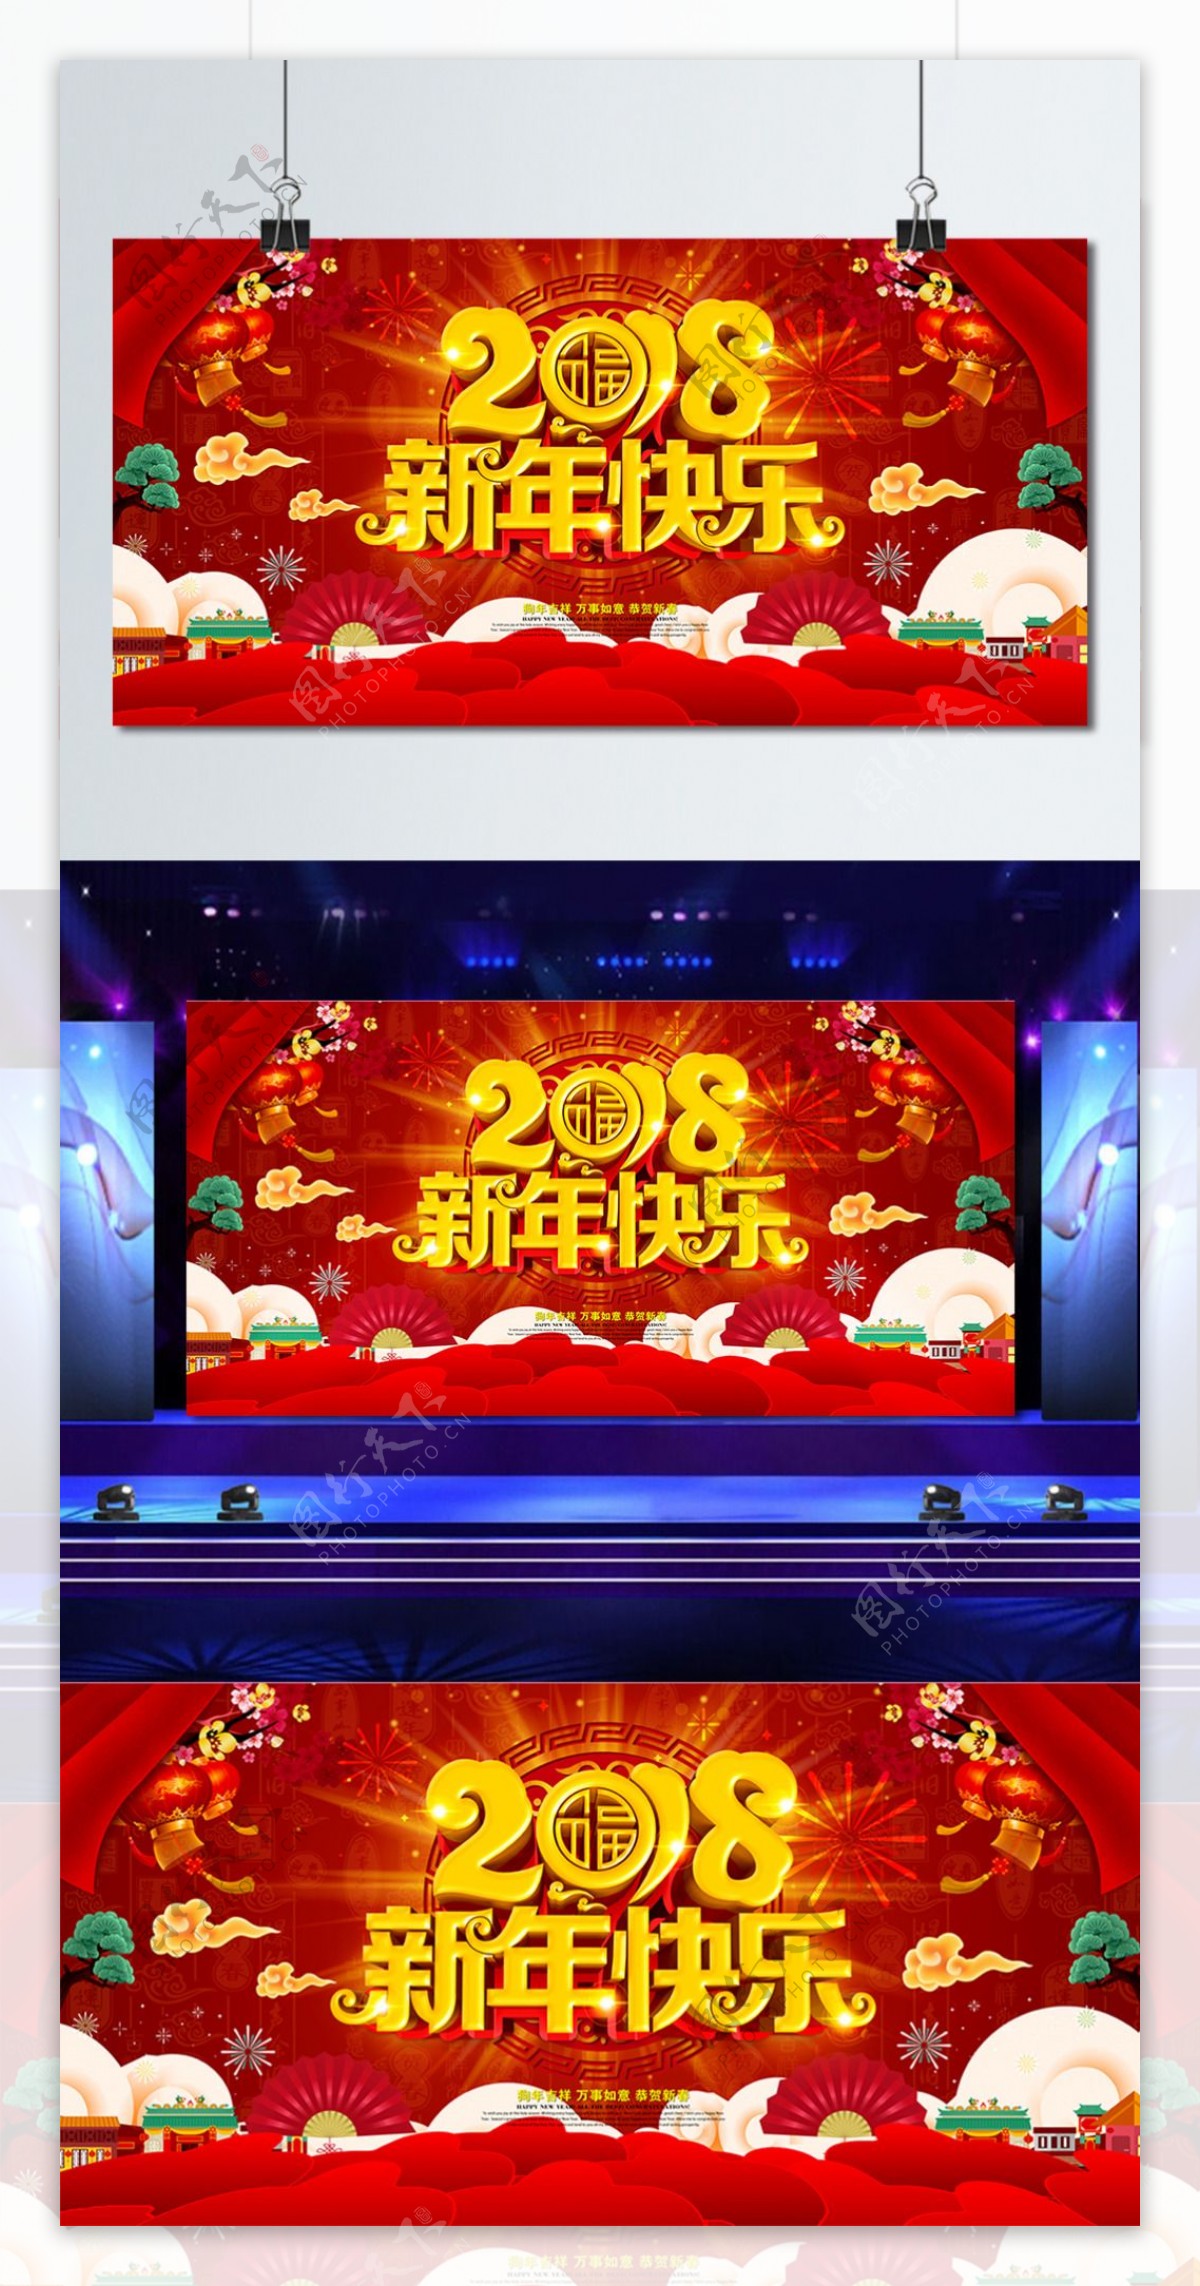 新年快乐红色喜庆舞台背景设计PSD模版